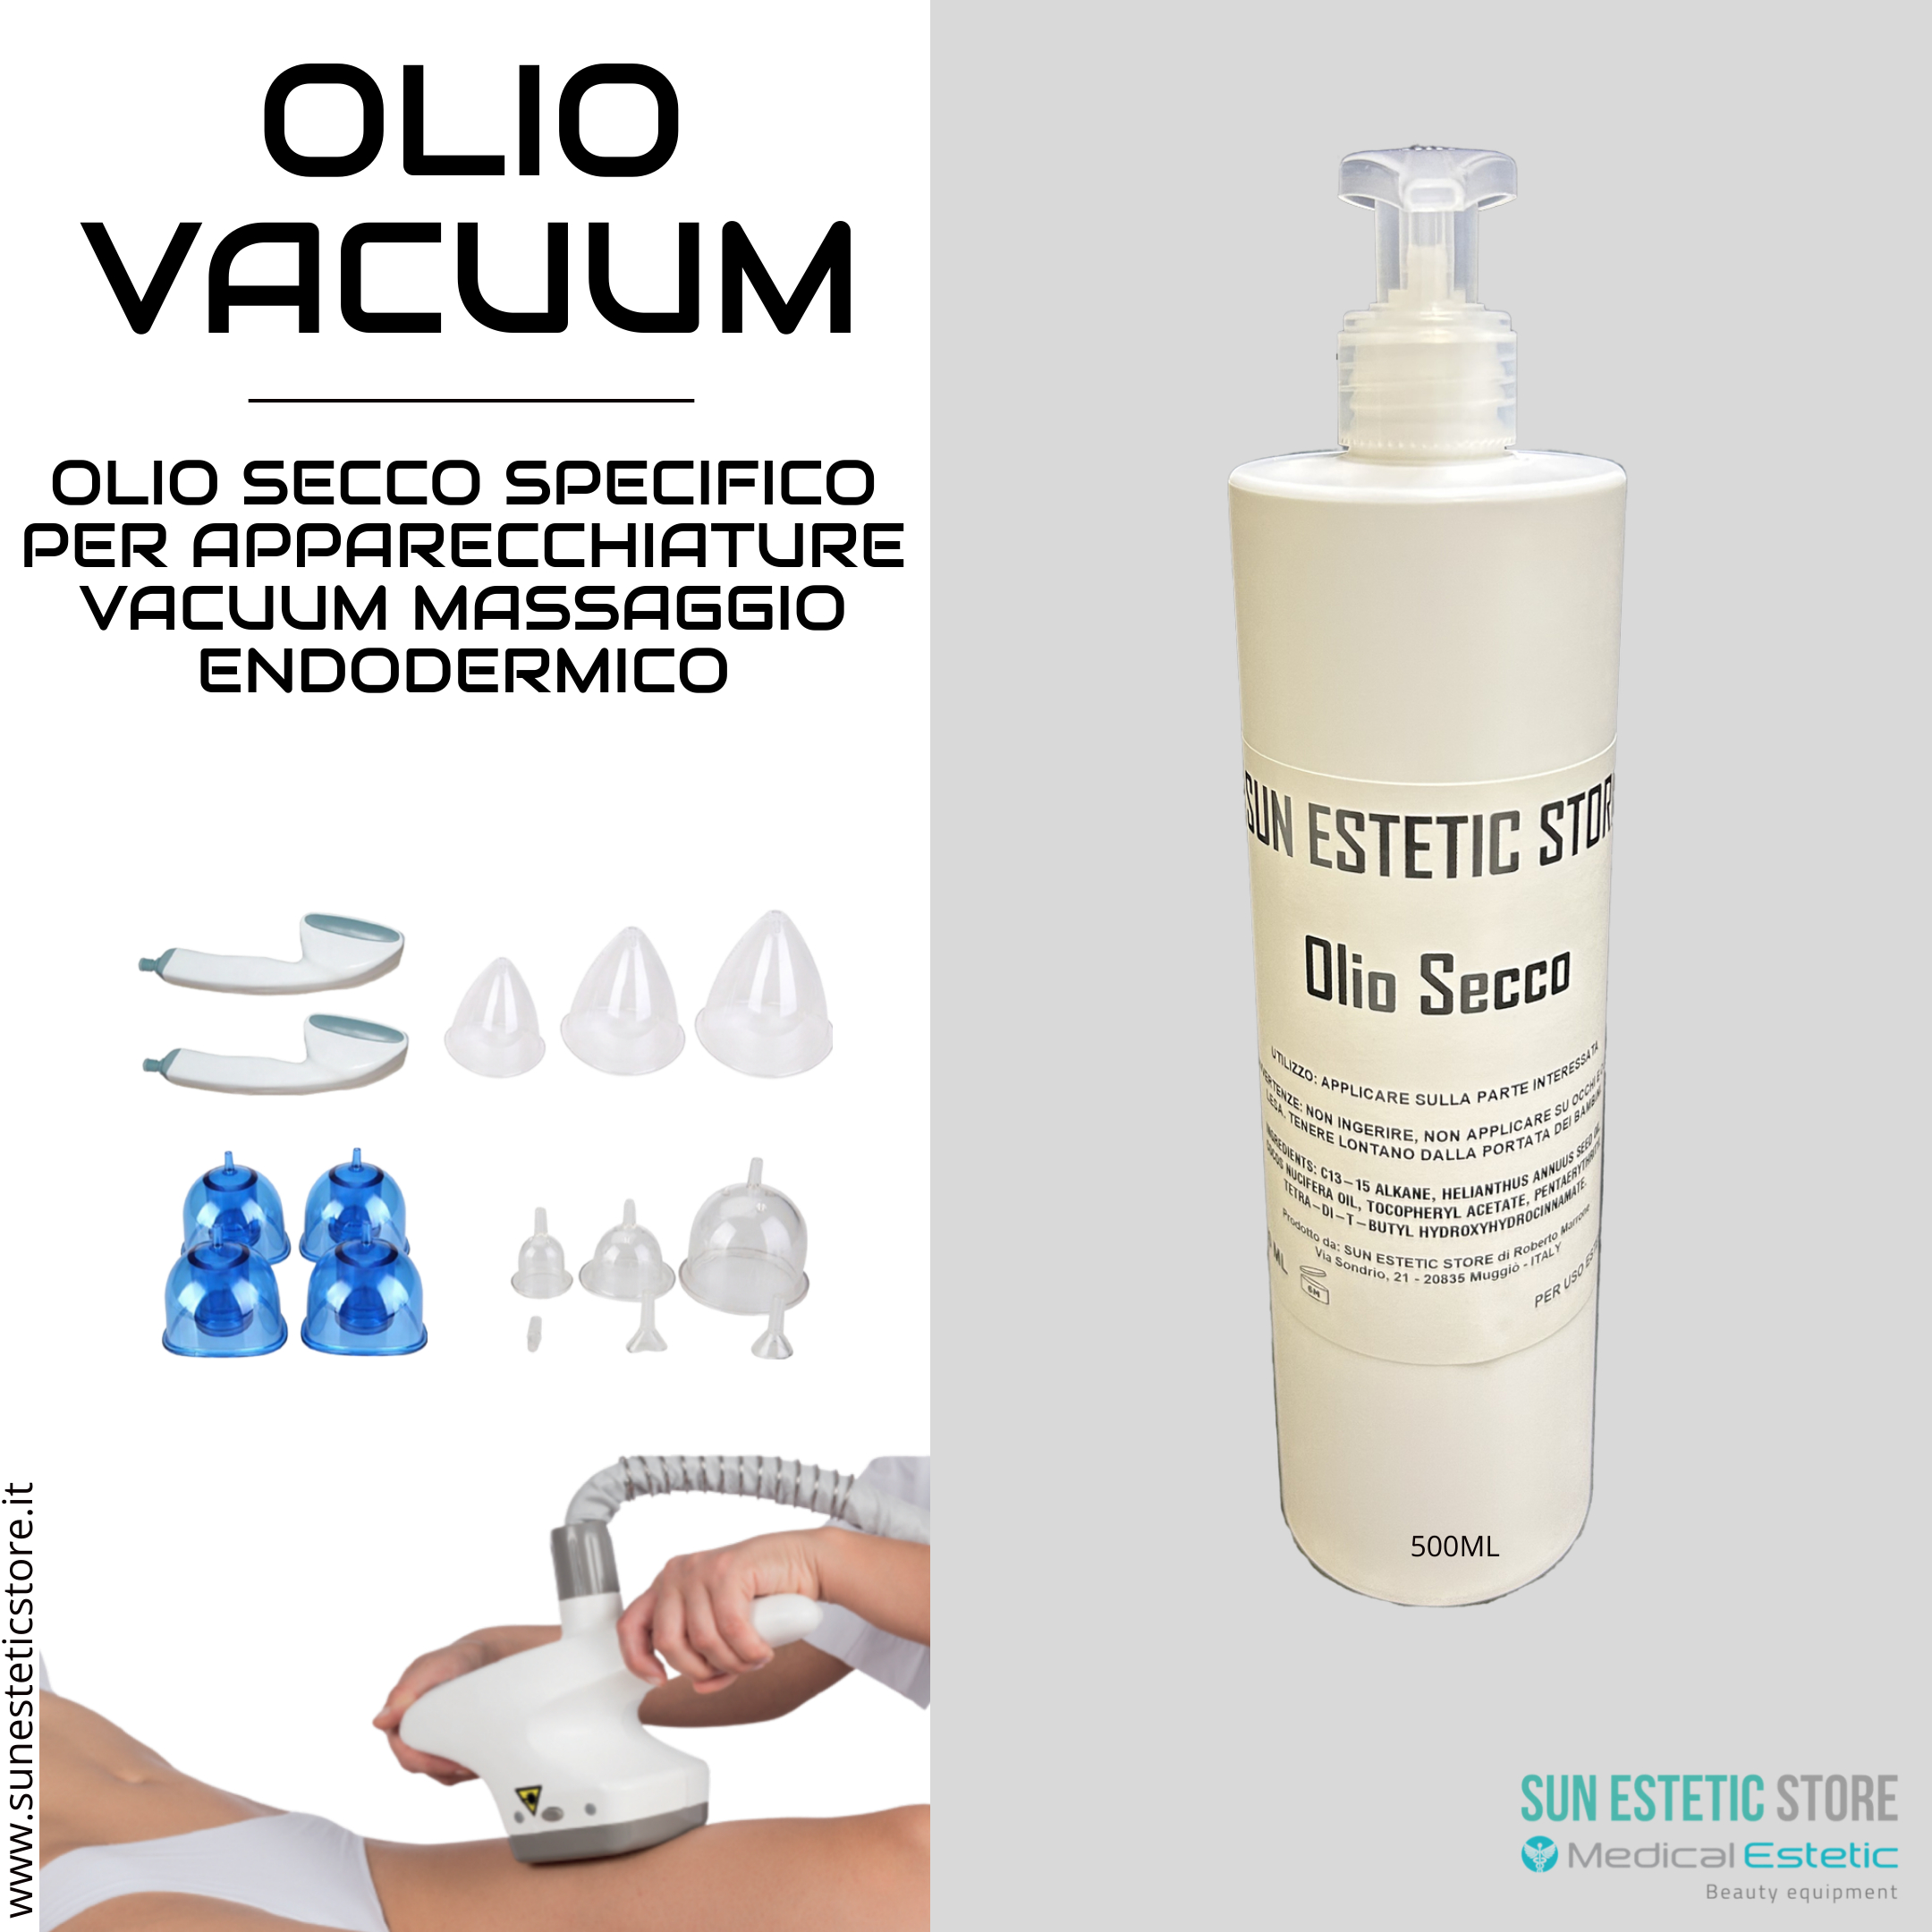 Olio secco vacuum prodotto specifico per apparecchiature massaggio  endodermico - Sunestetic store